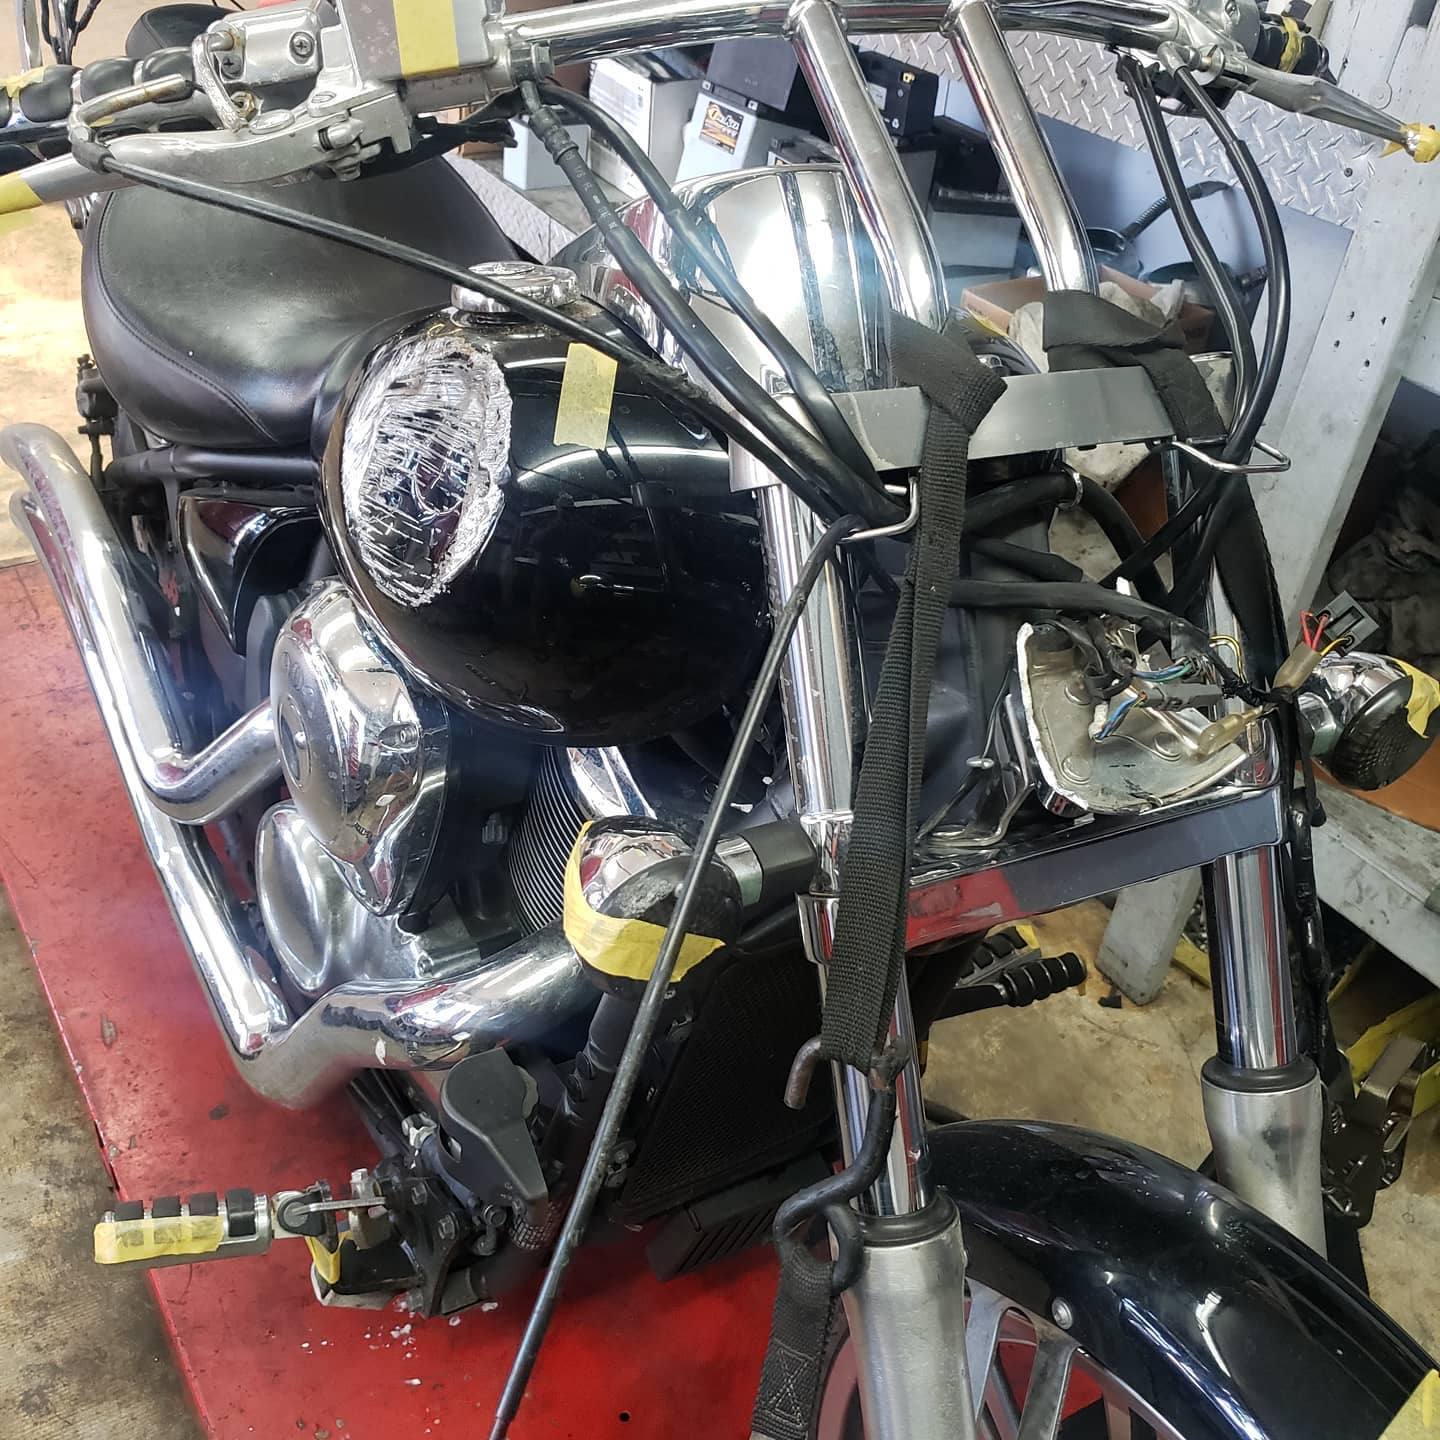 Repairs on a Kawasaki